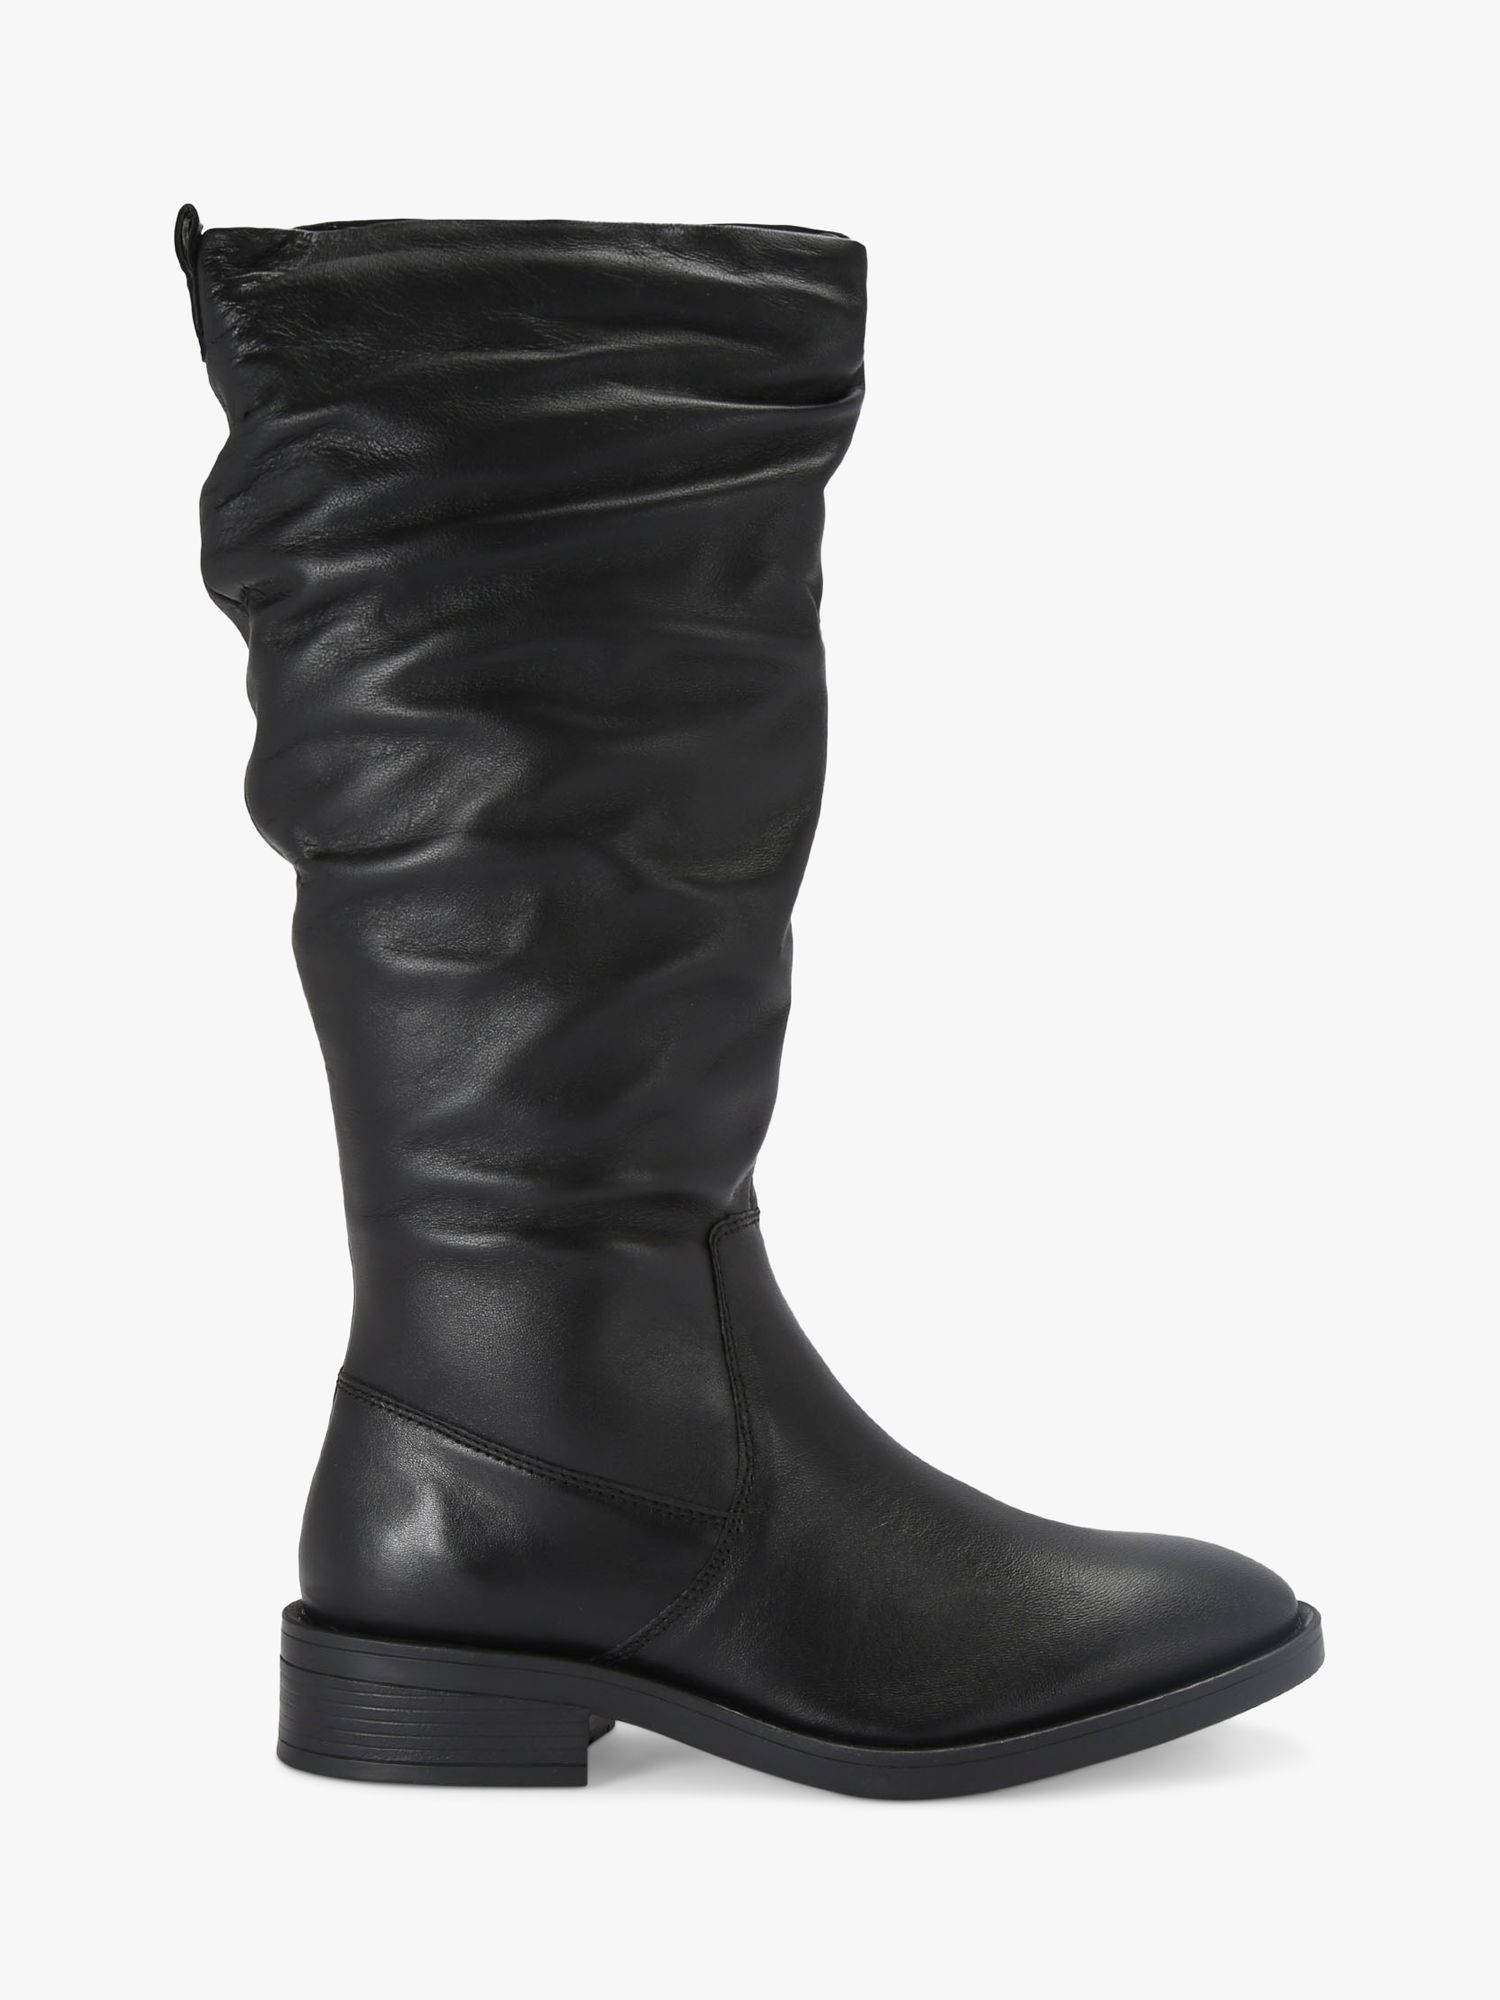 Carvela Parlour Leather Calf Boots, Black, 4